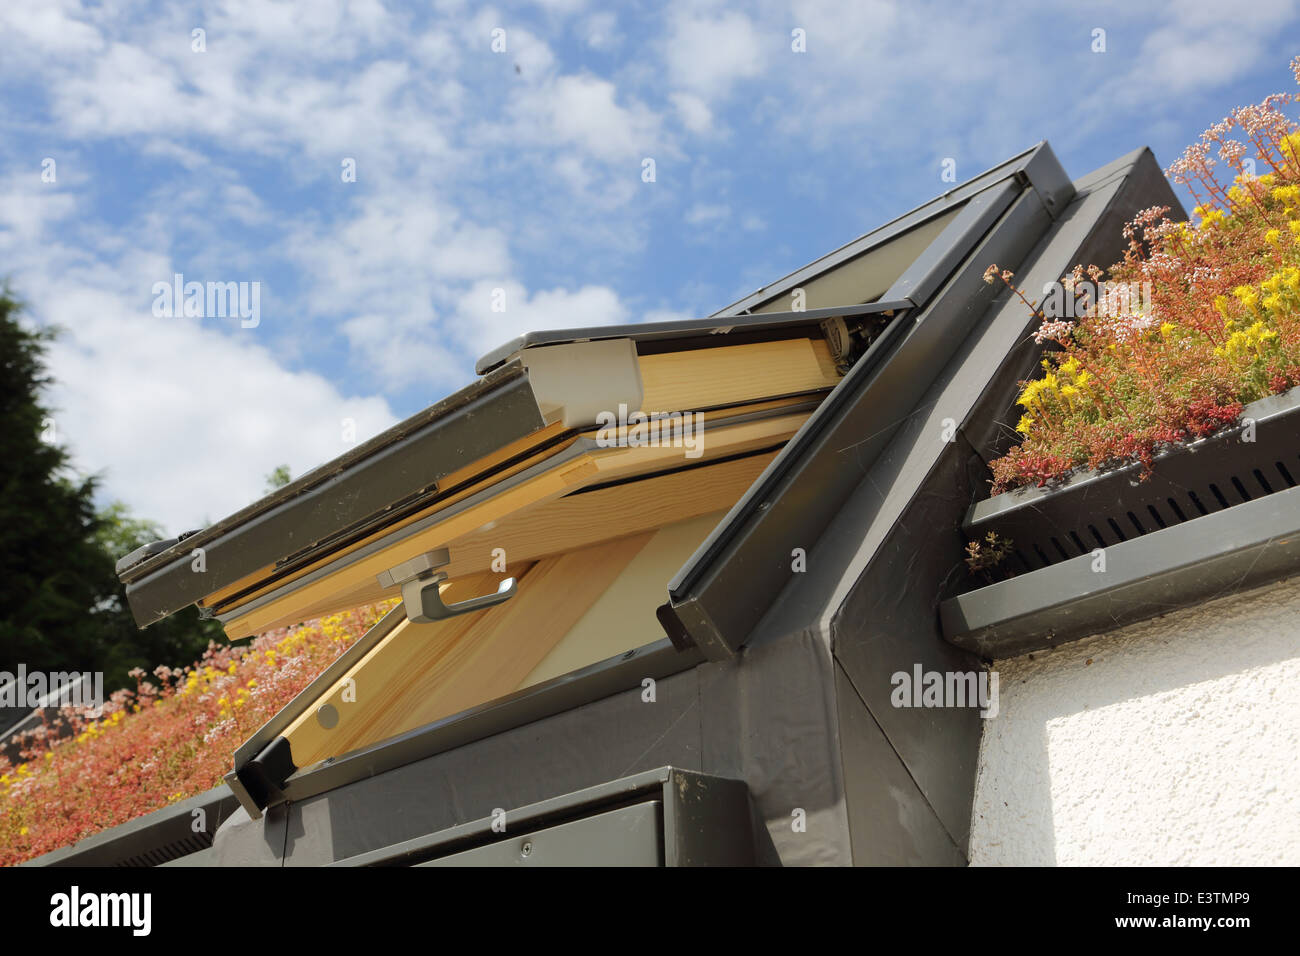 Ein begrüntes Dach, bestehend aus den unterschiedlichsten Sedum Pflanzen umgeben Fakro Dachfenster auf ein einstöckiges Holzhaus Stockfoto